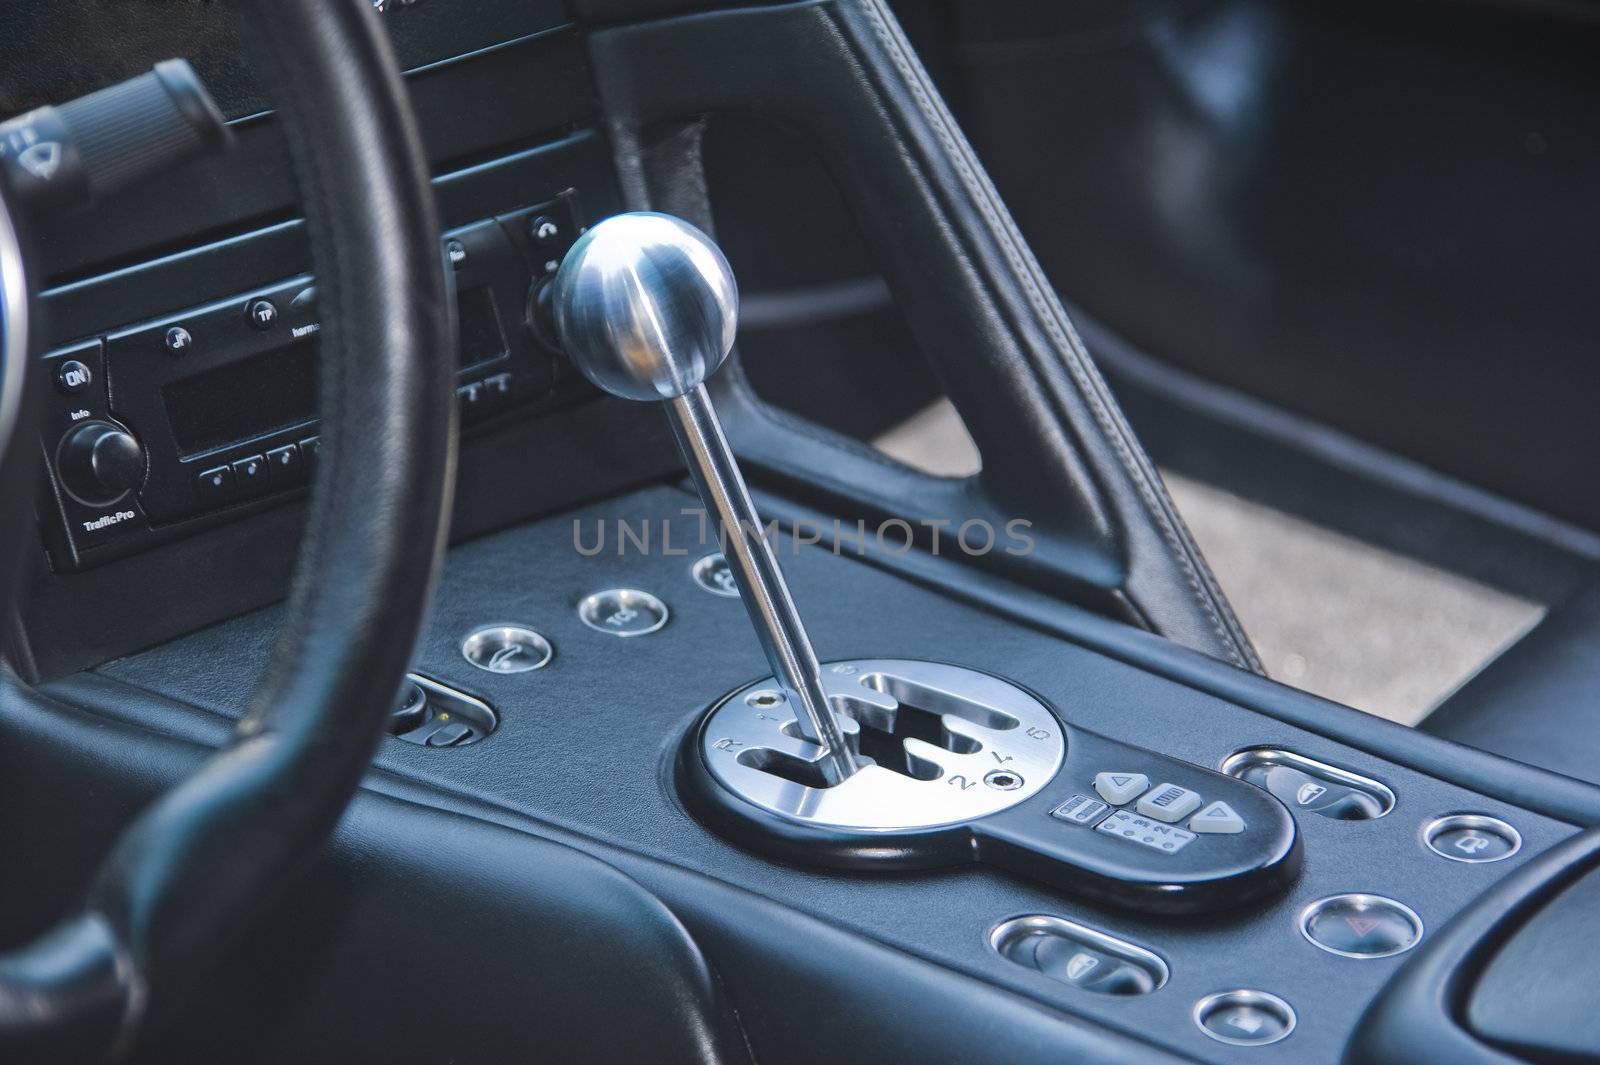 Gear shift lever in exotic Italian sportscar